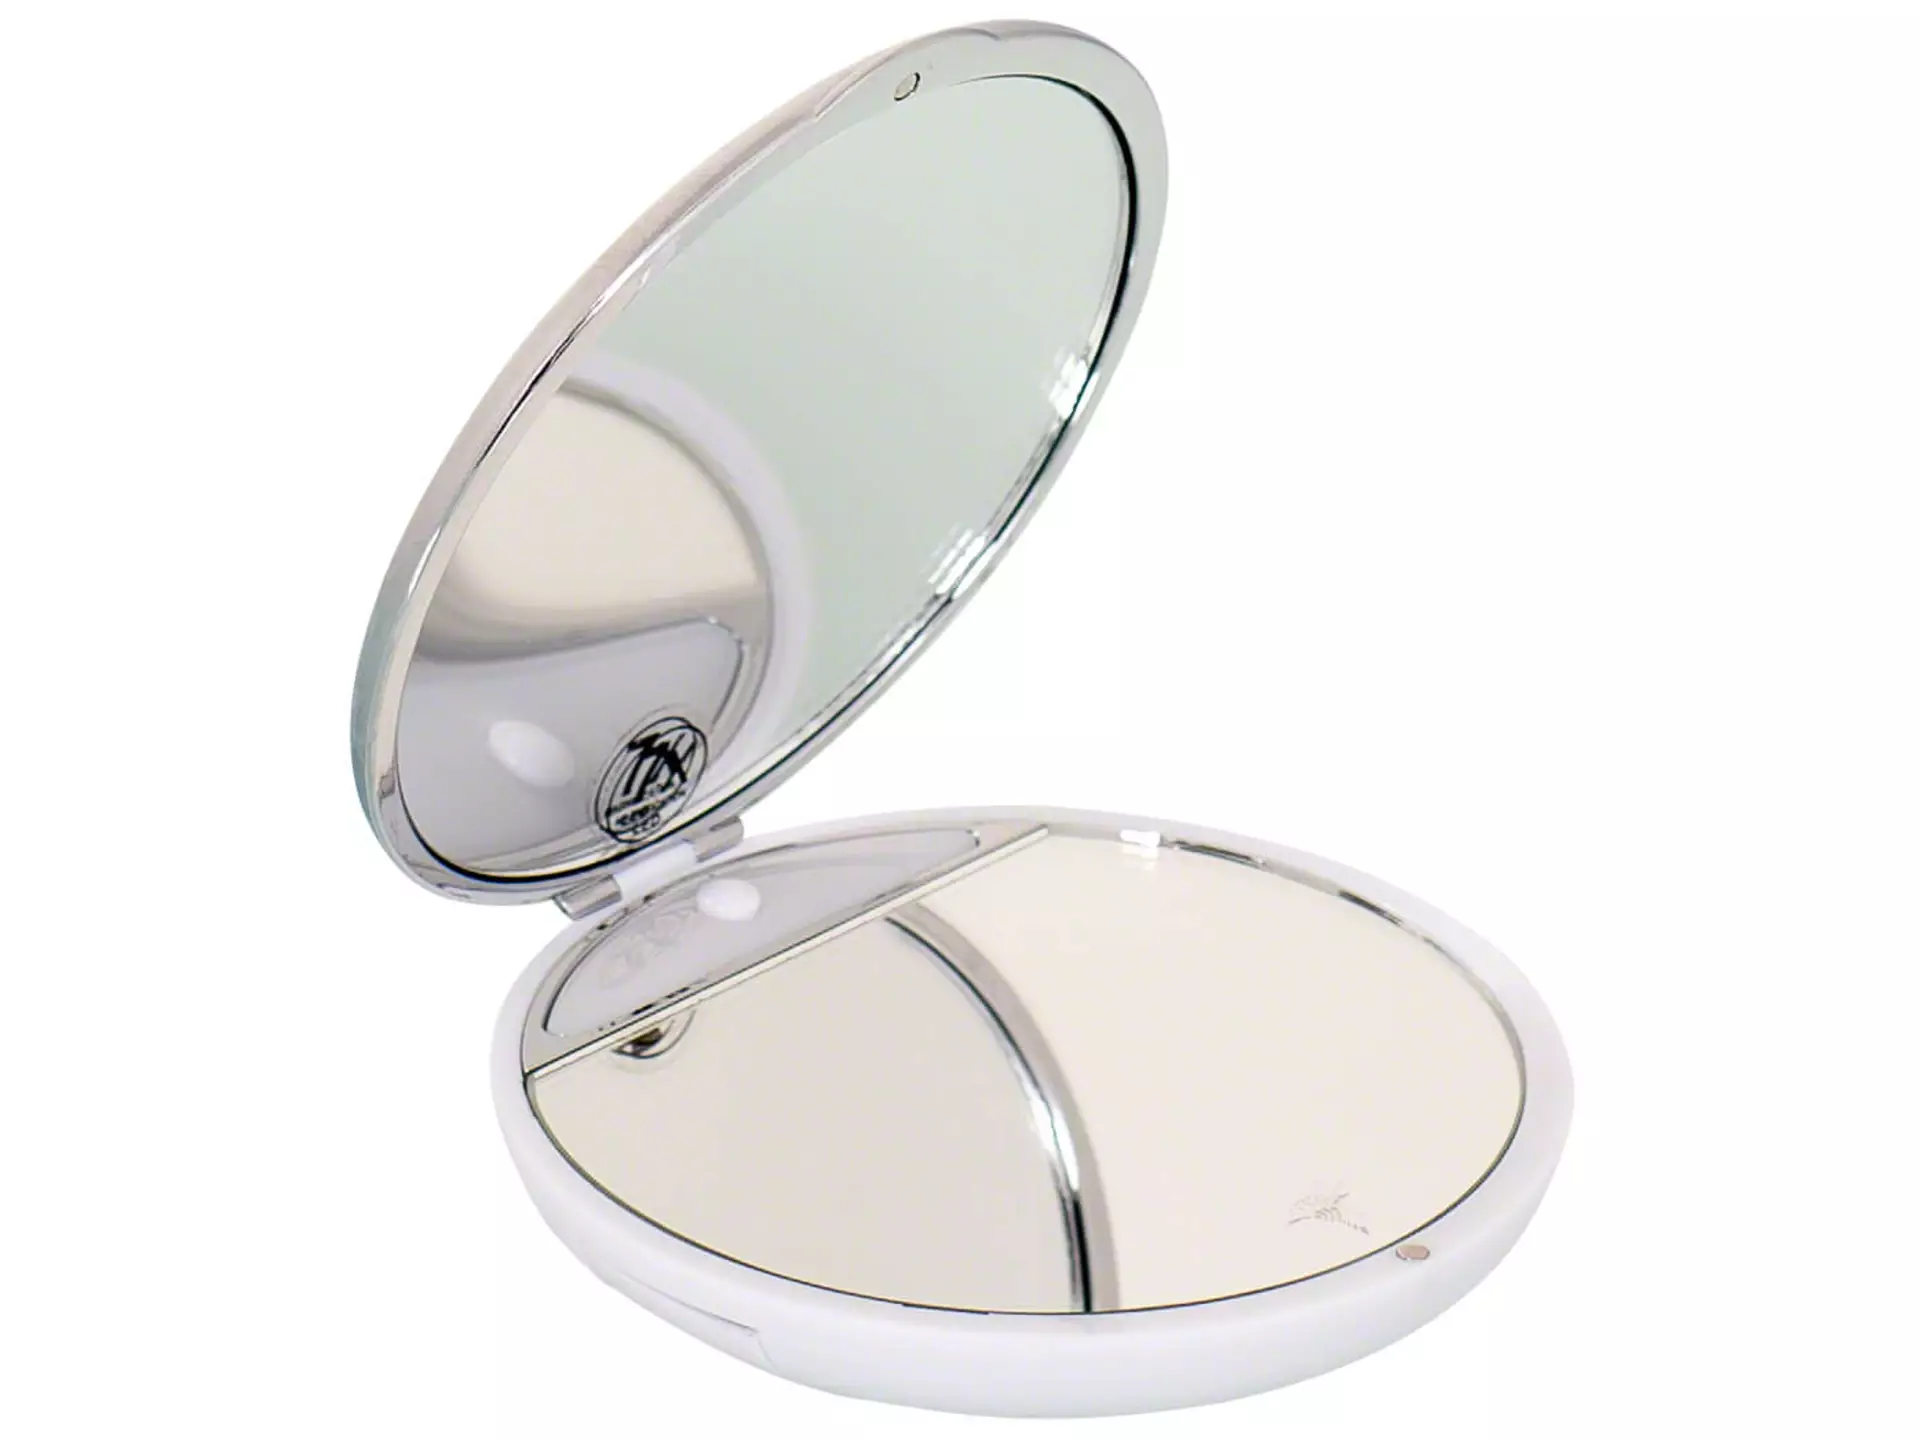 Taschen-Kosmetikspiegel Joop!, Chrom, Aufklappbar, Durchmesser 9 cm